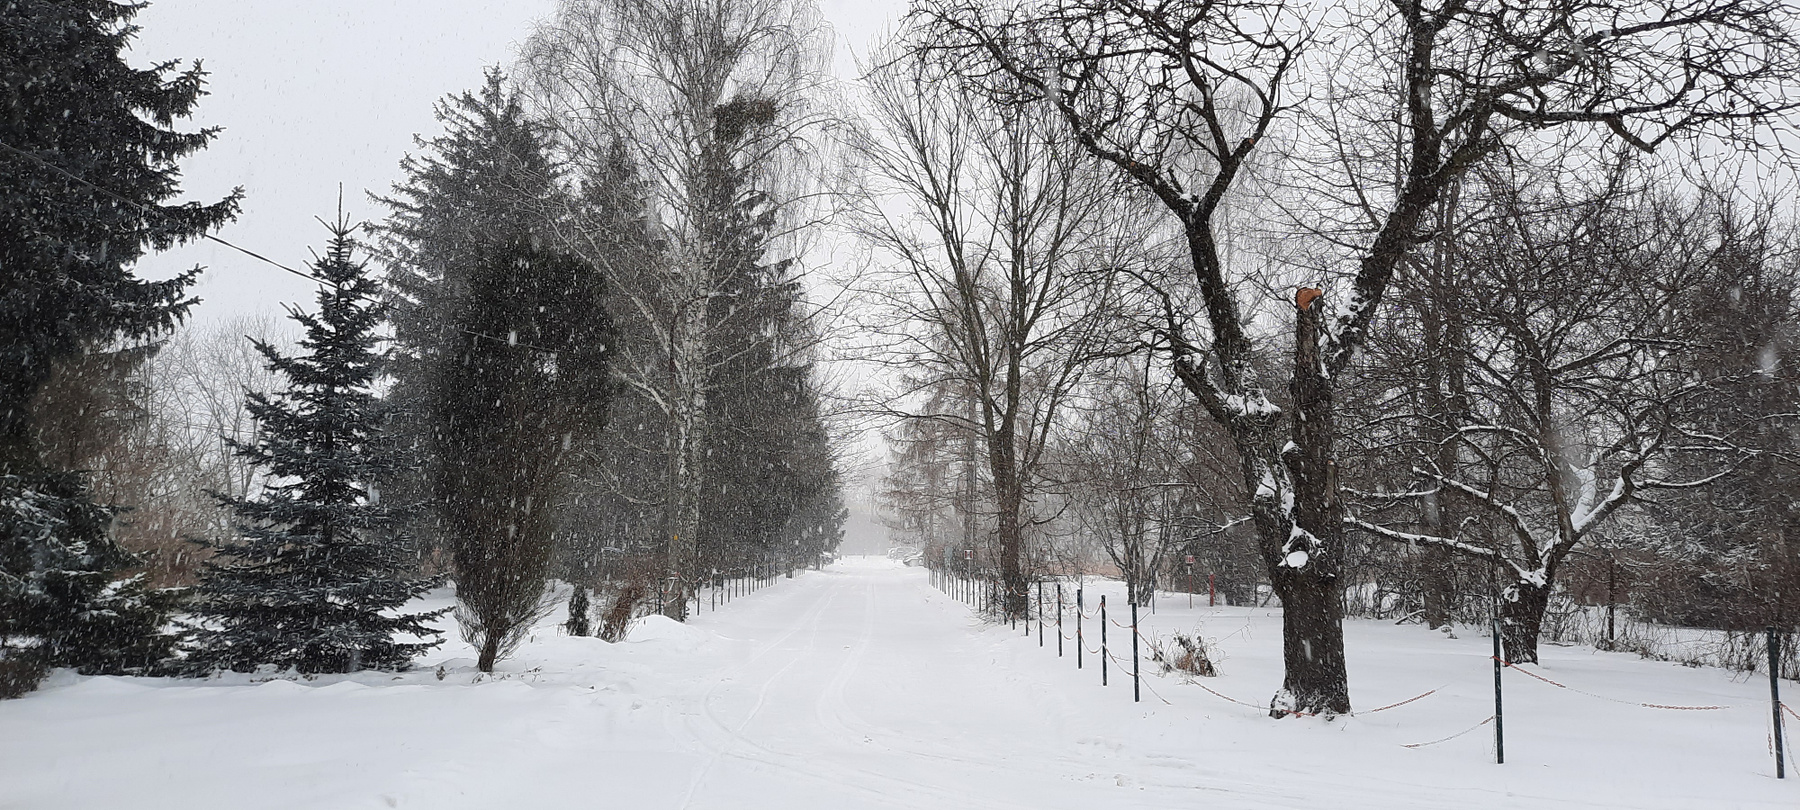 Прогулка во время снегопада зима снег